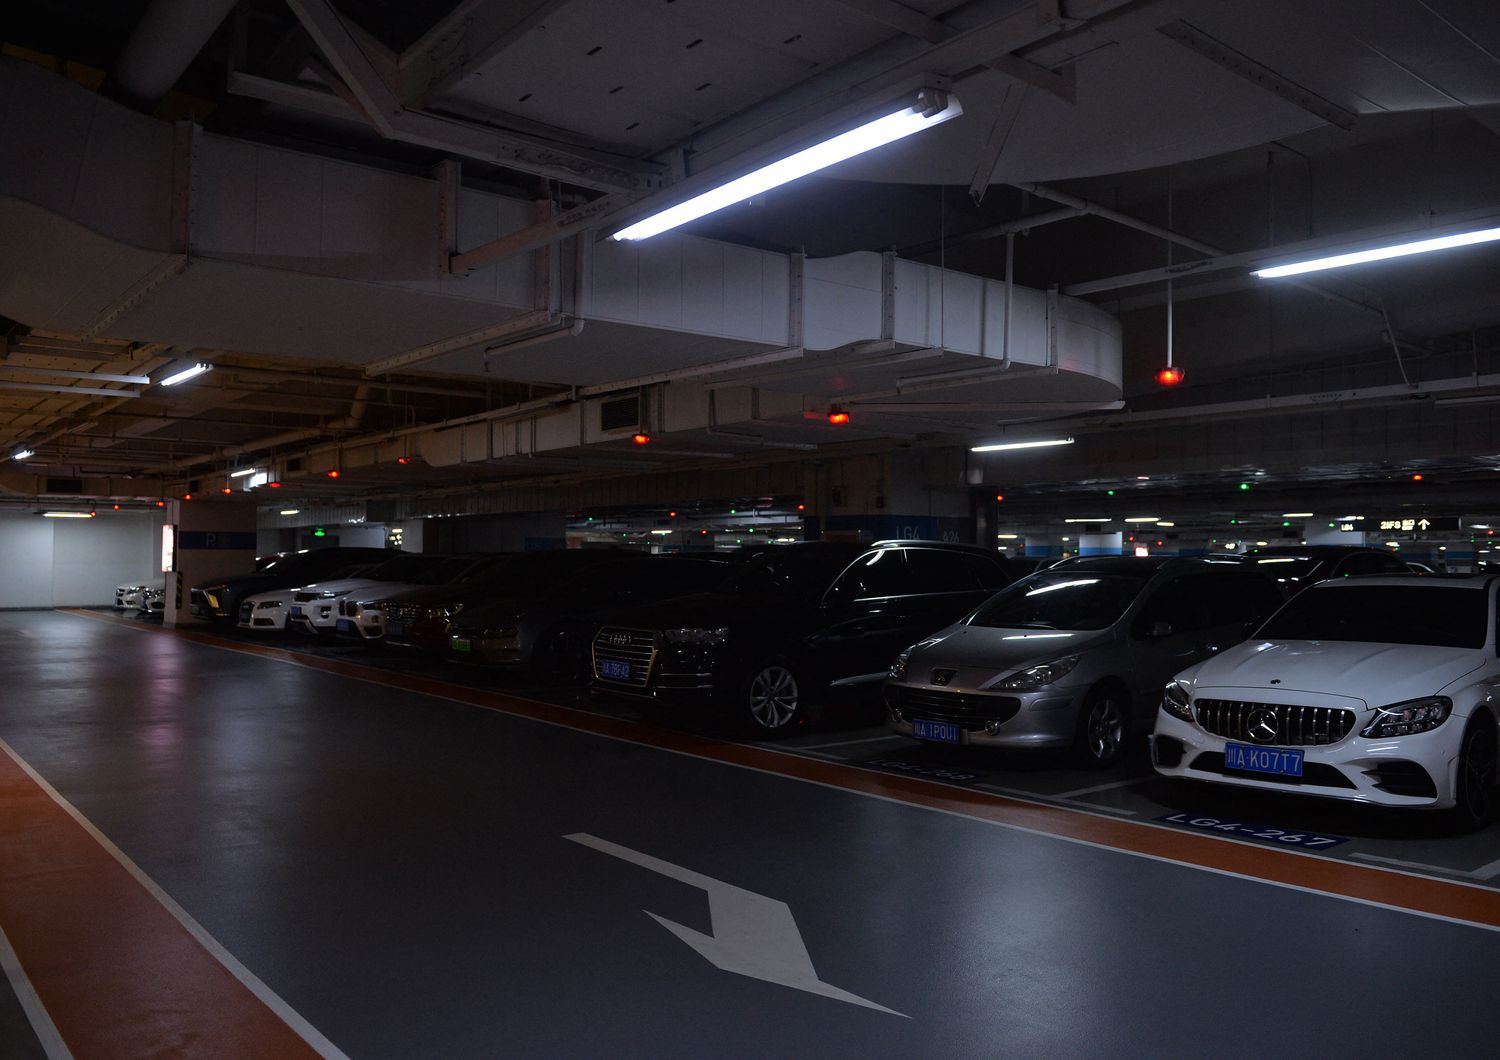 Un parcheggio di Chengdu con le luci quasi spente per risparmiare energia